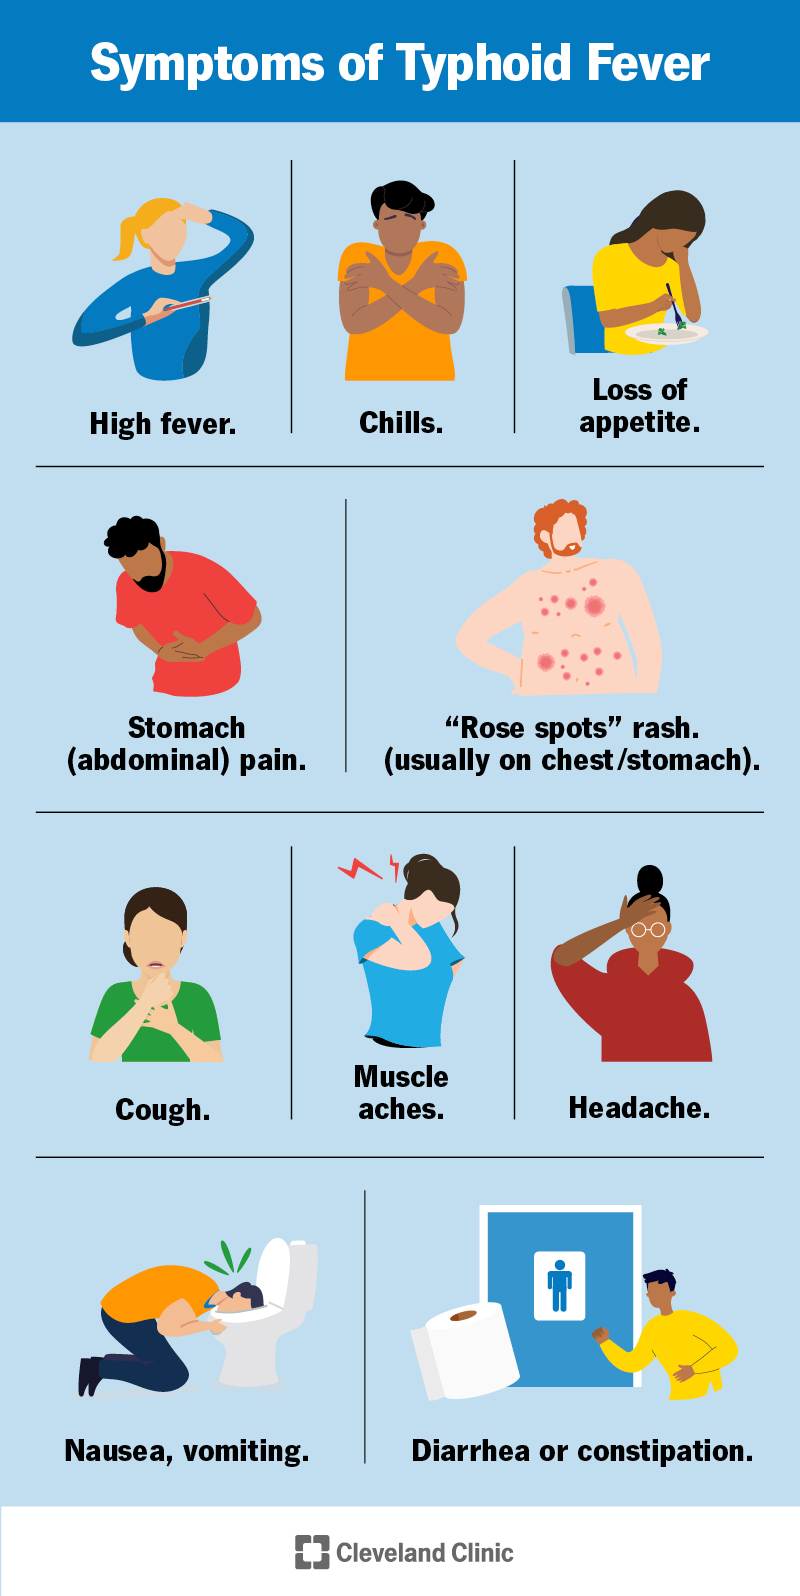 I sintomi del tifo includono febbre alta, mal di stomaco, eruzione cutanea, tosse, dolori muscolari, vomito, diarrea, stitichezza e altro ancora.